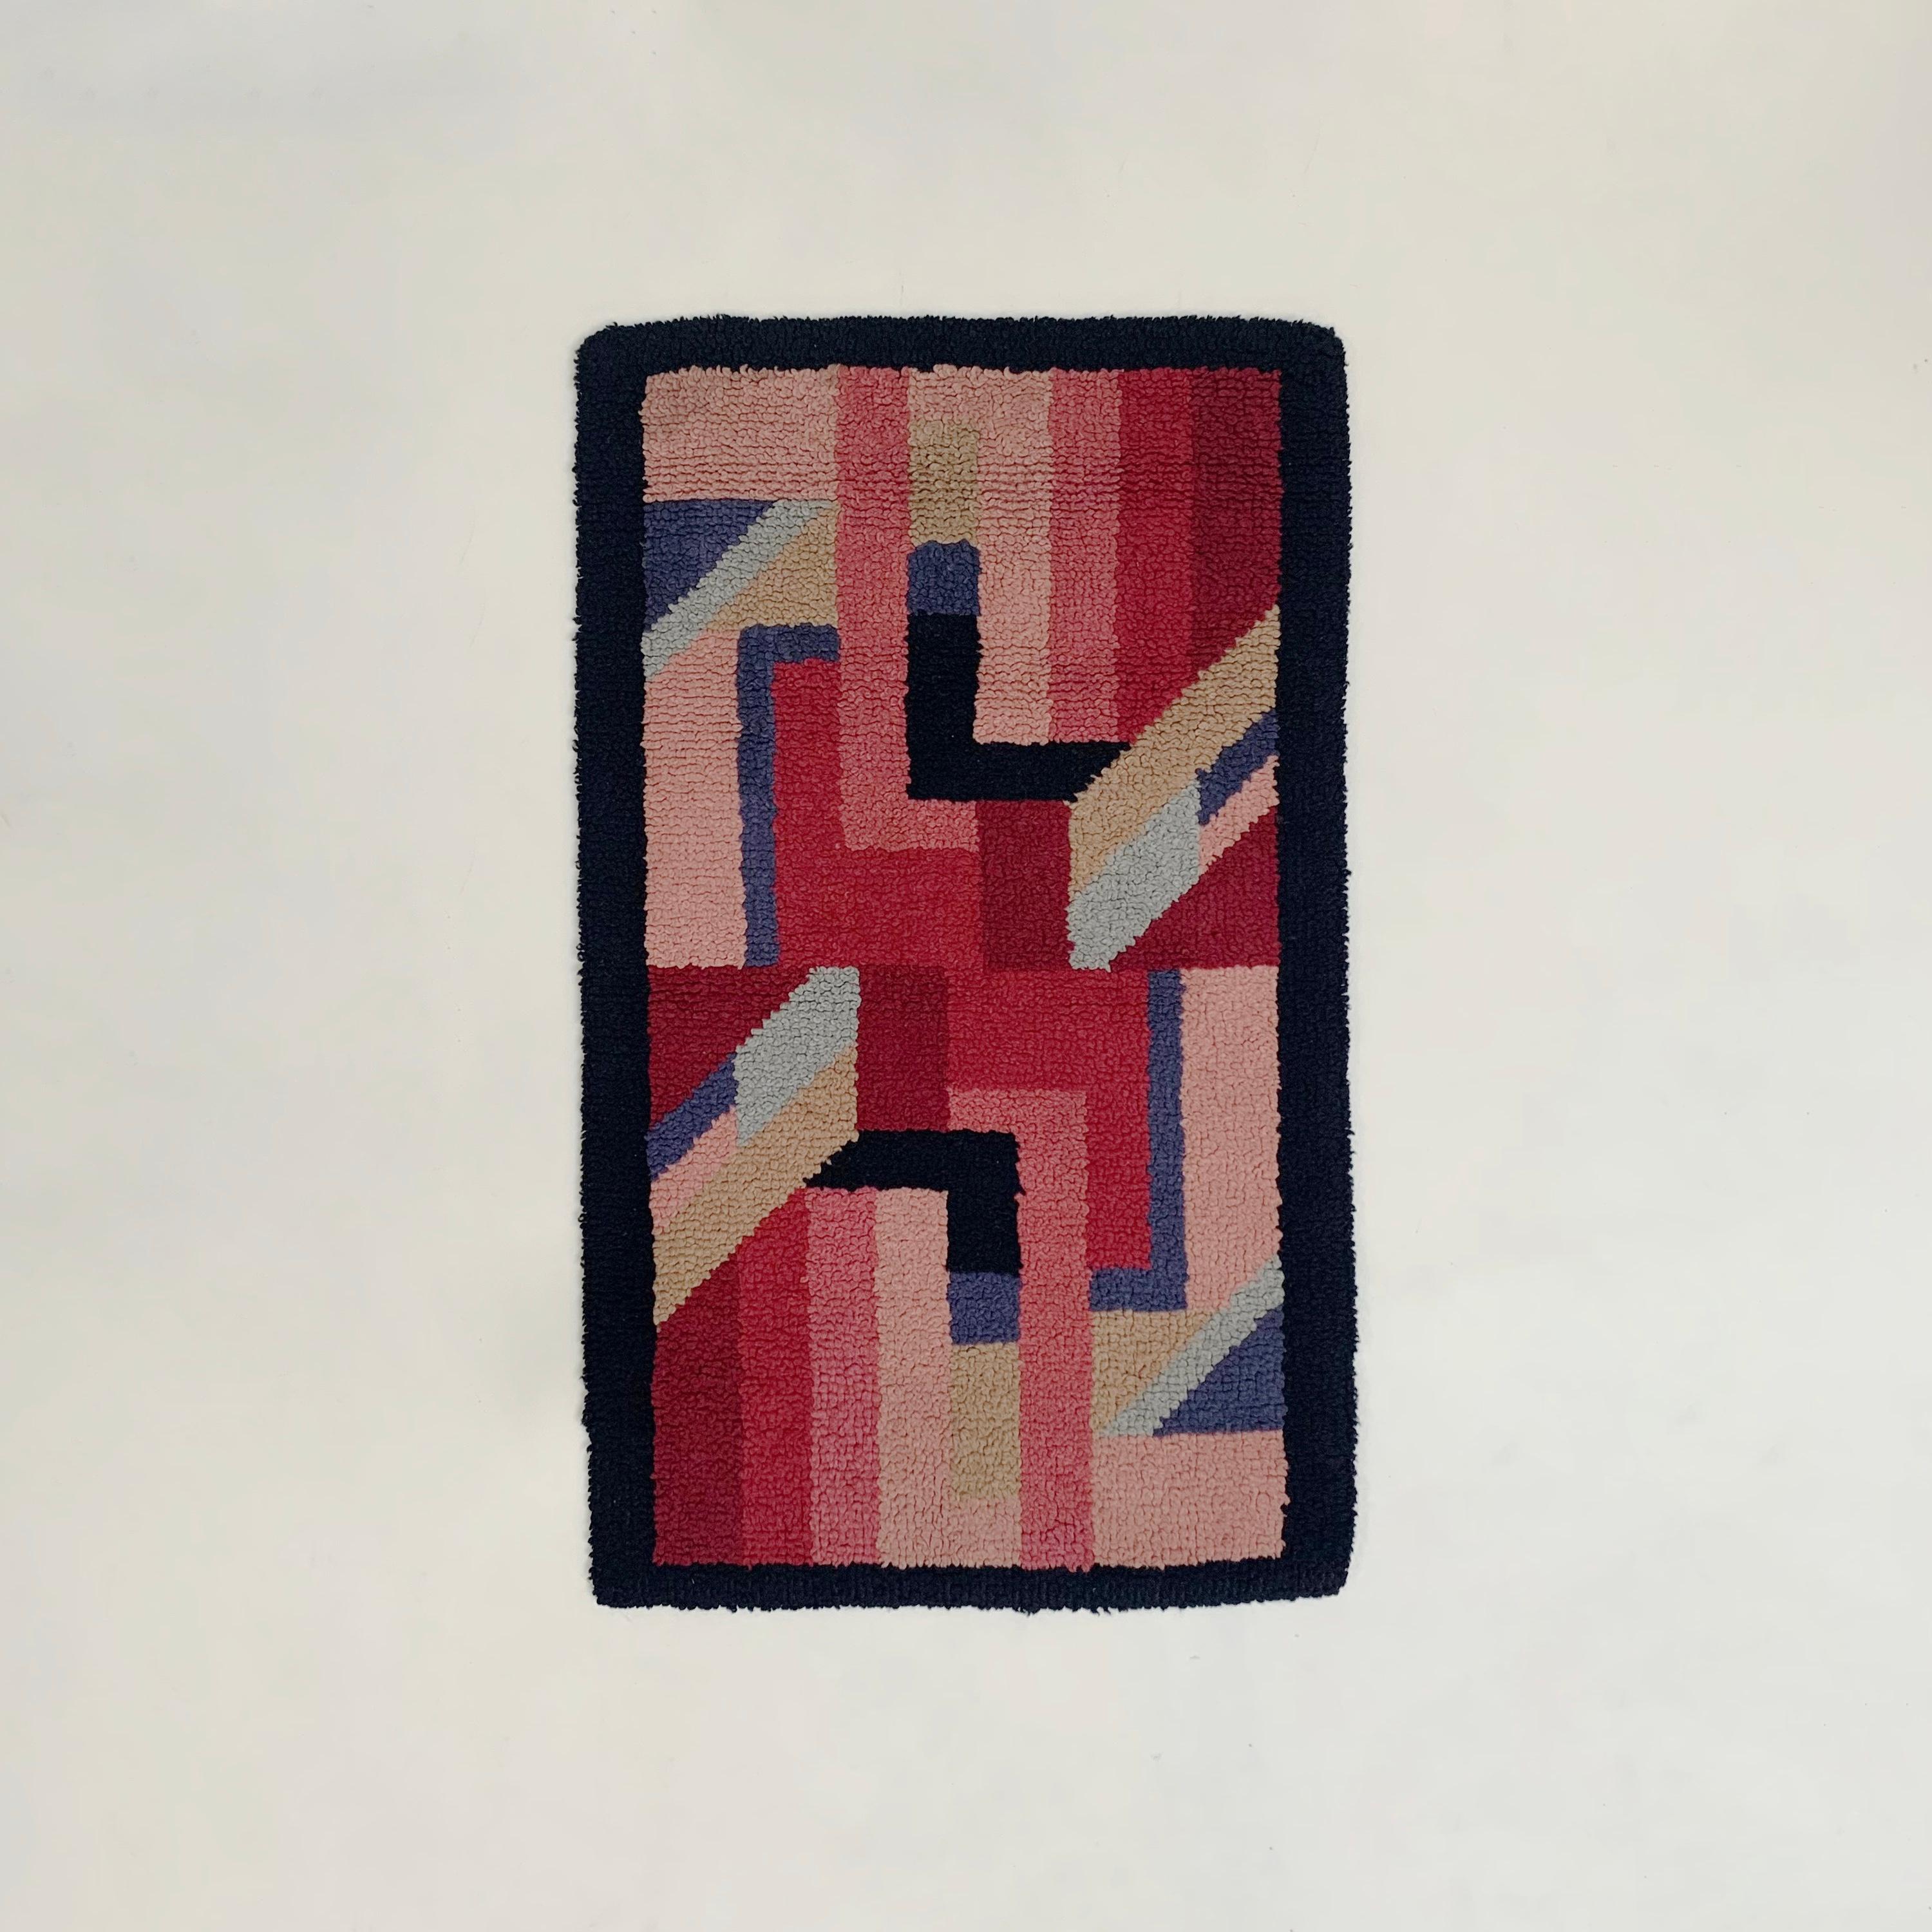 Kleiner antiker Art-Déco-Teppich aus dem frühen 20. Jahrhundert, um 1930, Frankreich.
Handgeknüpfte Wolle.
Symetrische und geometrische Linien und Muster in leuchtenden Pink-, Rot-, Blau-, Beige- und Schwarztönen.
Größe leicht an die Wand zu